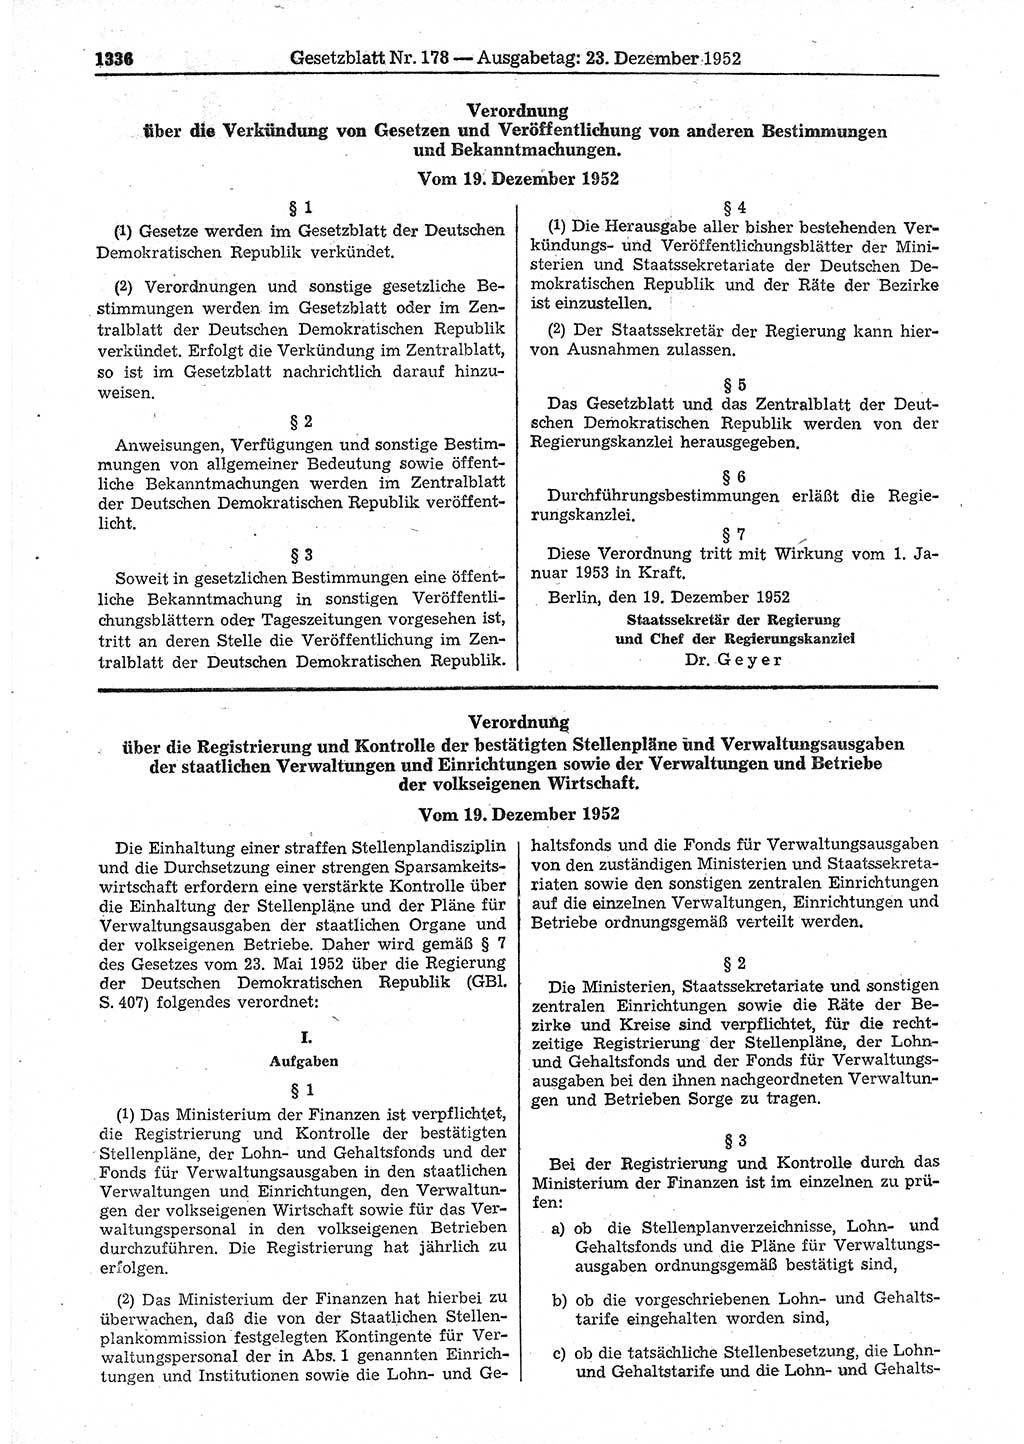 Gesetzblatt (GBl.) der Deutschen Demokratischen Republik (DDR) 1952, Seite 1336 (GBl. DDR 1952, S. 1336)